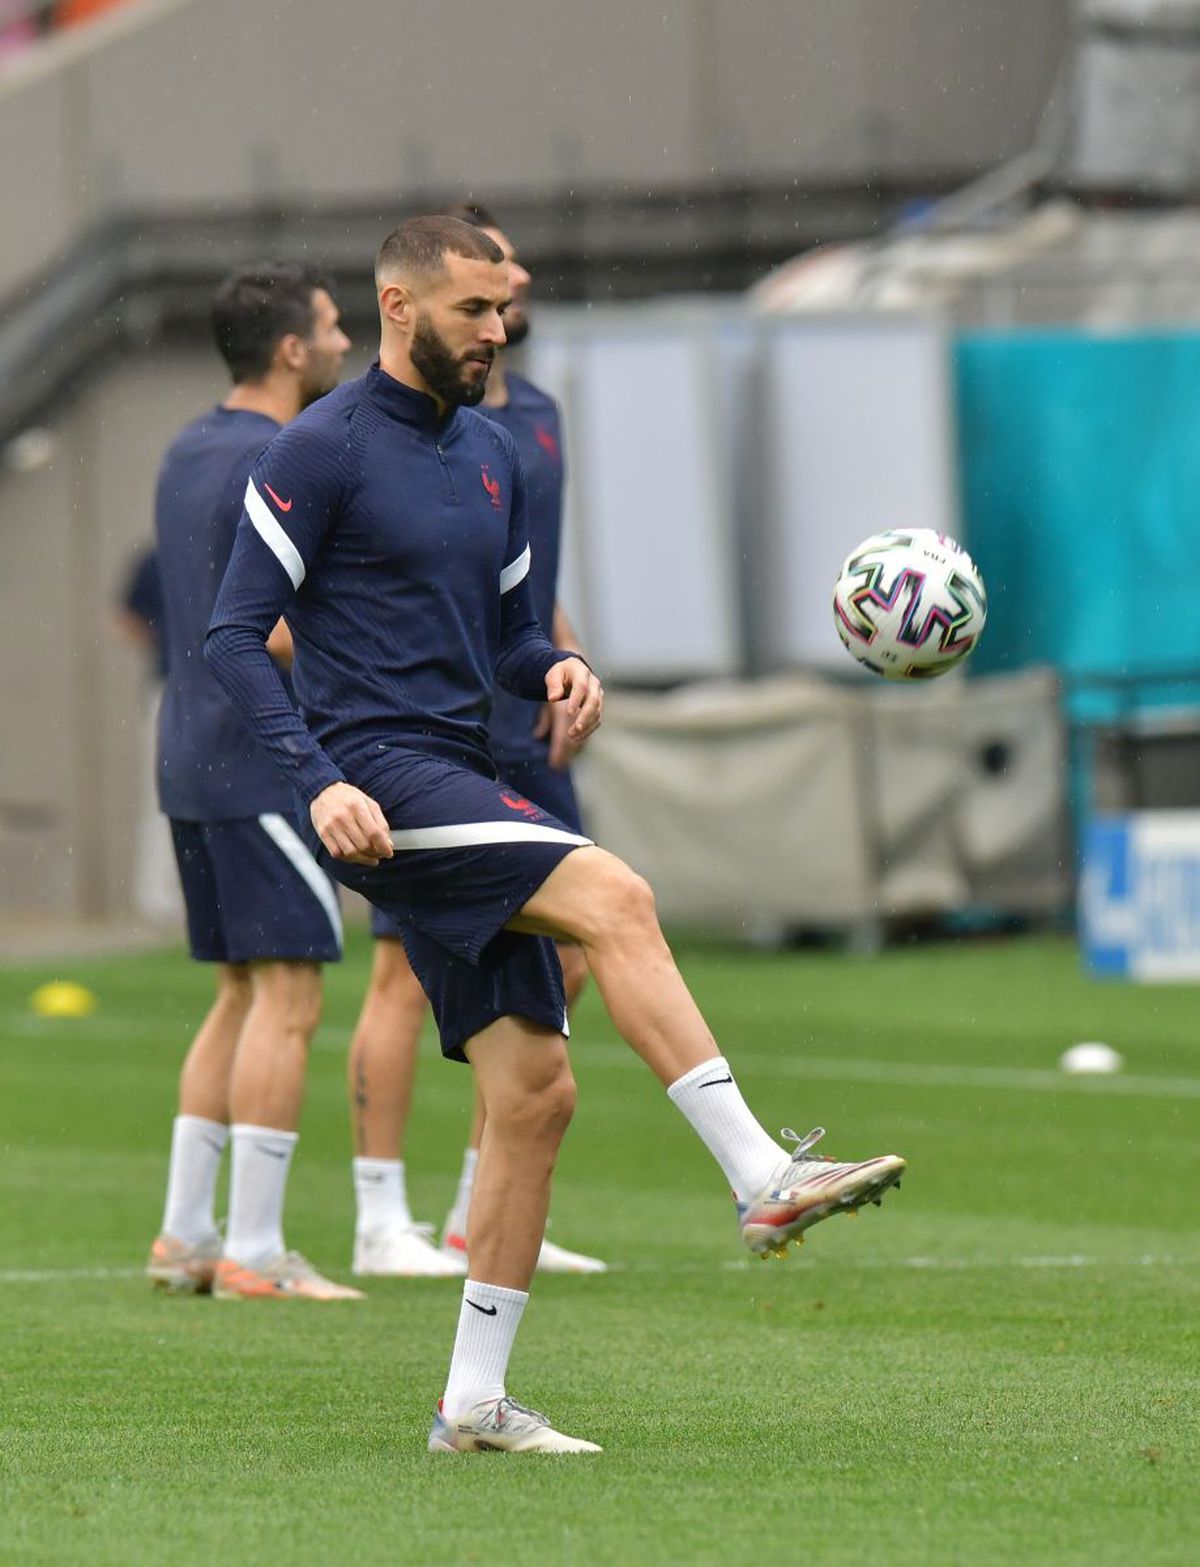 Nici de două echipe! Câți francezi și elvețieni au rămas în „națională” de când întâlneau România la Euro 2016